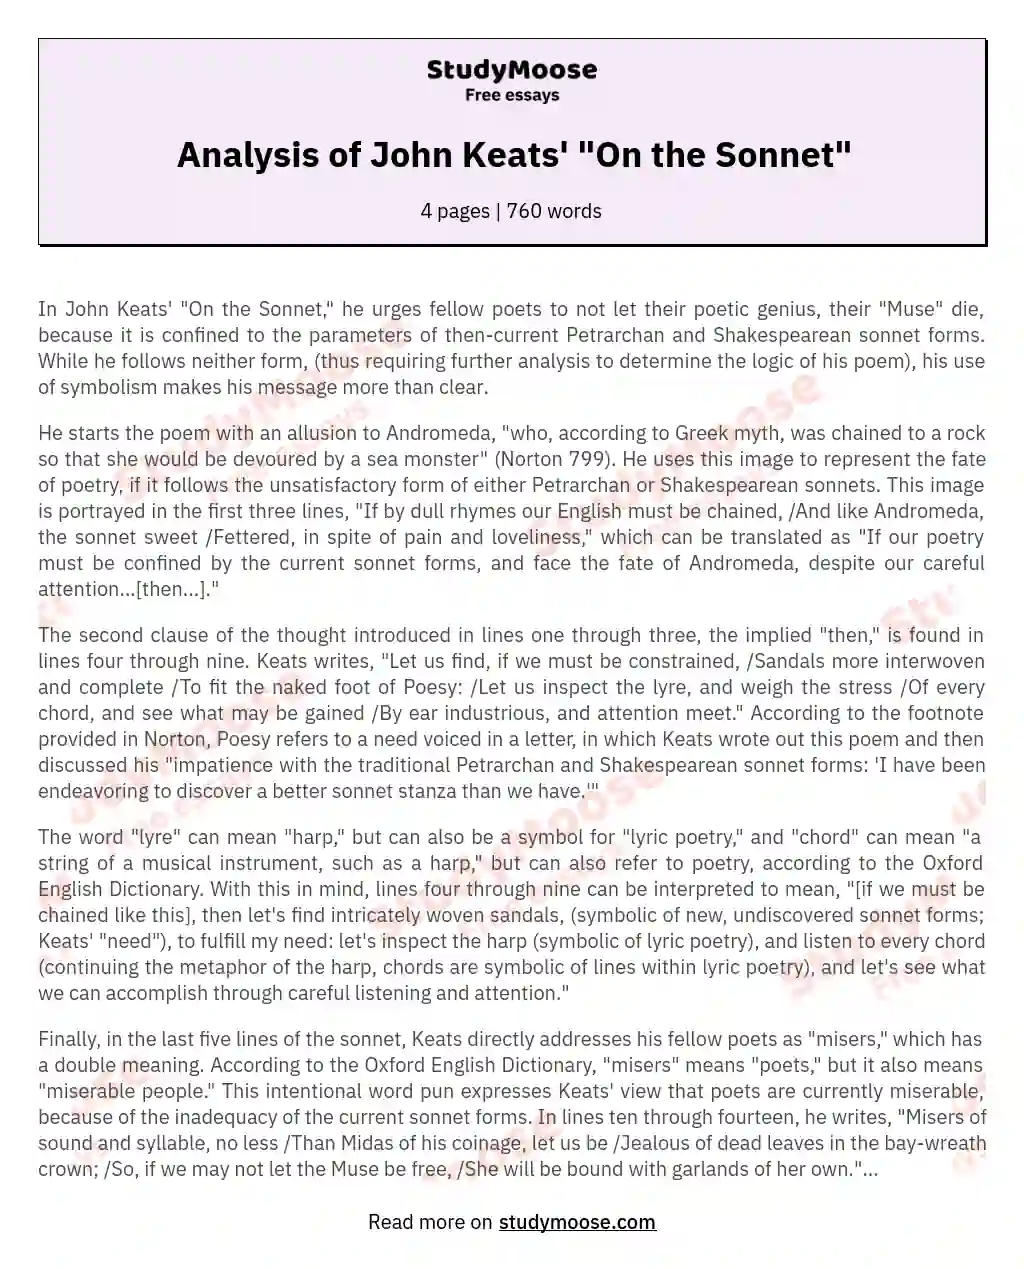 Analysis of John Keats' "On the Sonnet" essay